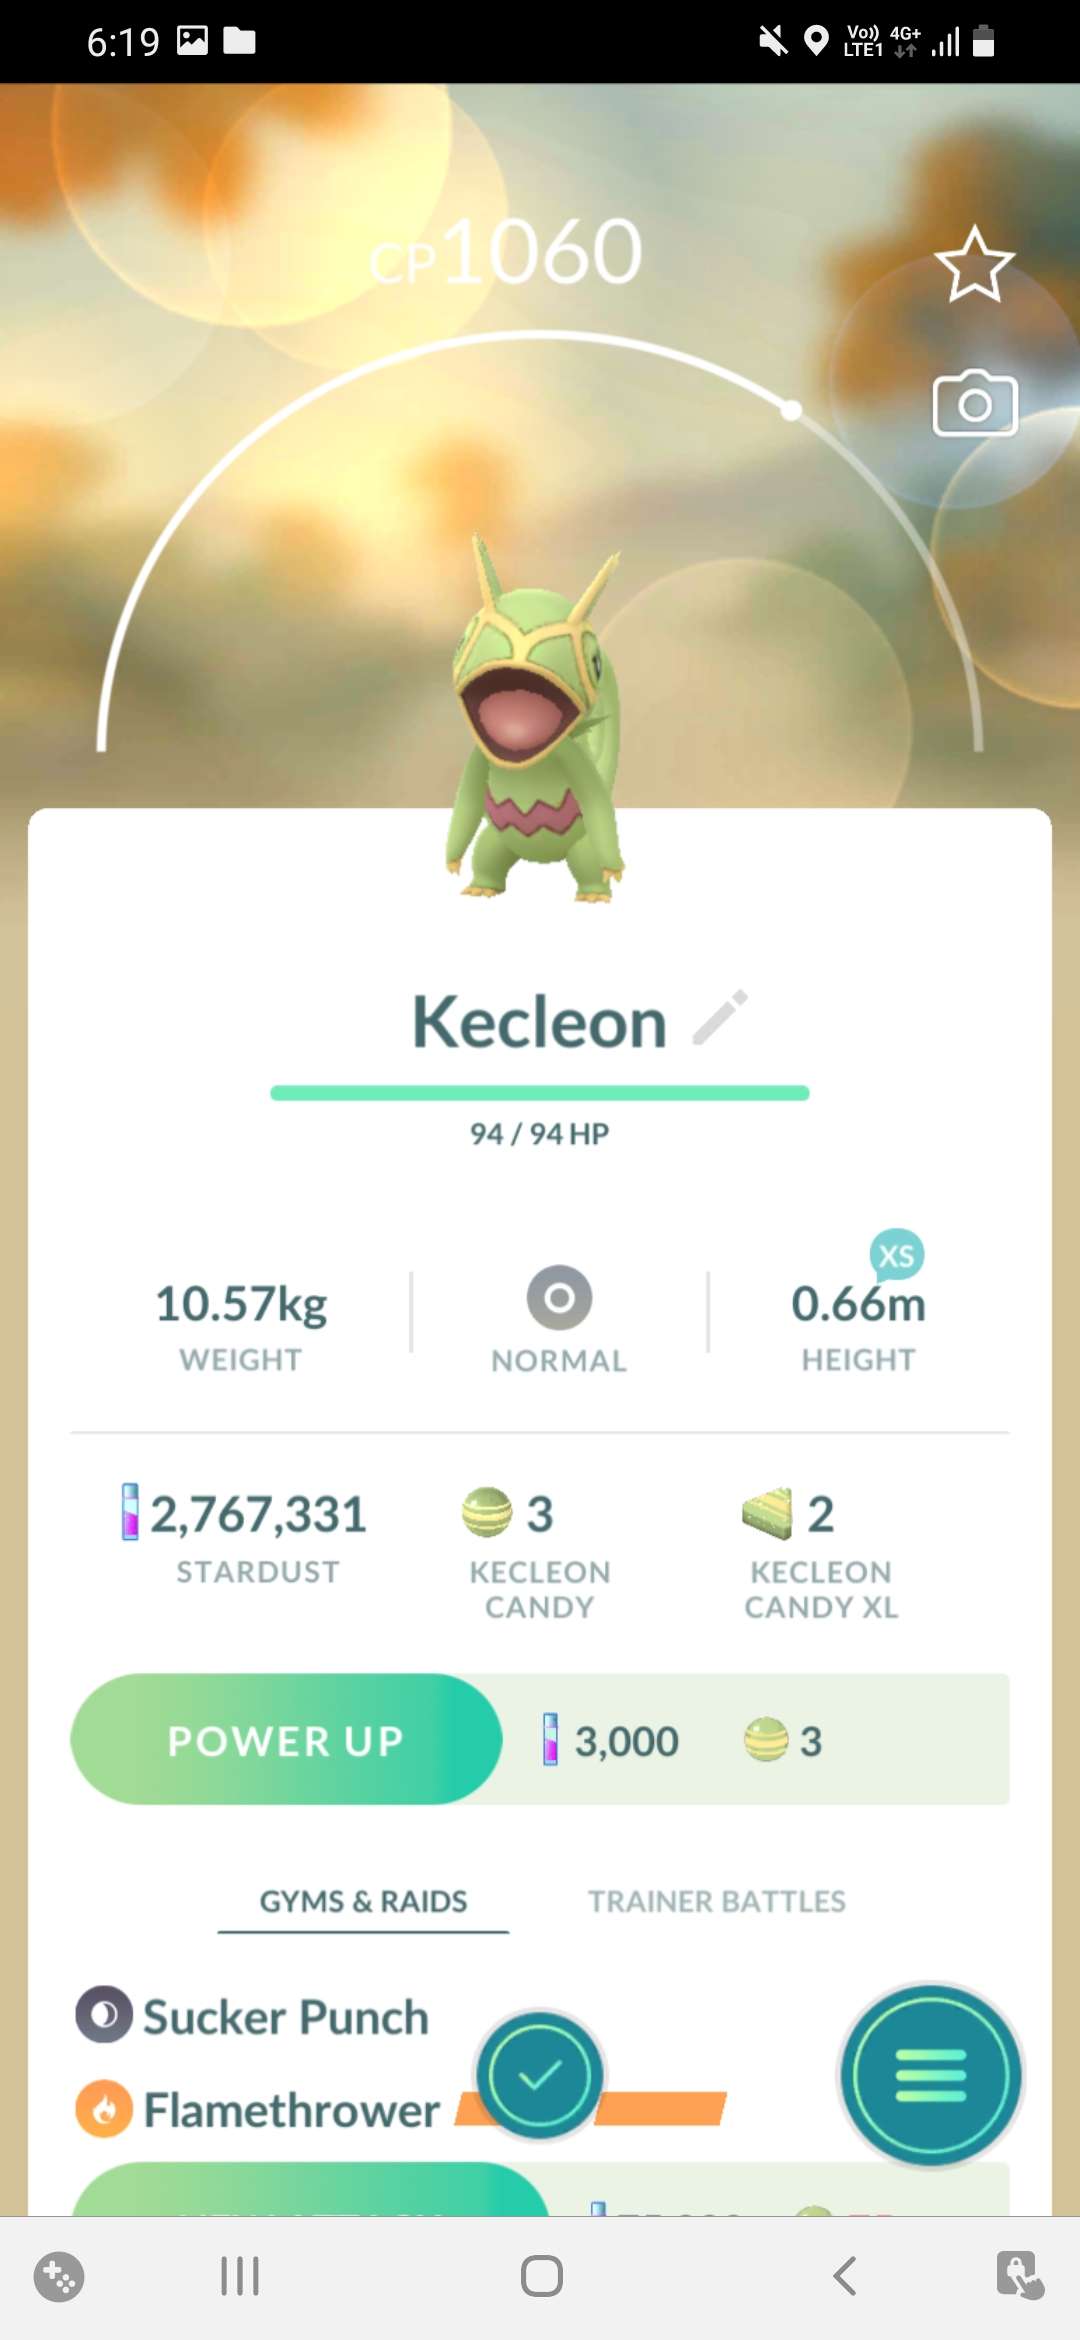 How to catch Kecleon in Pokémon Go